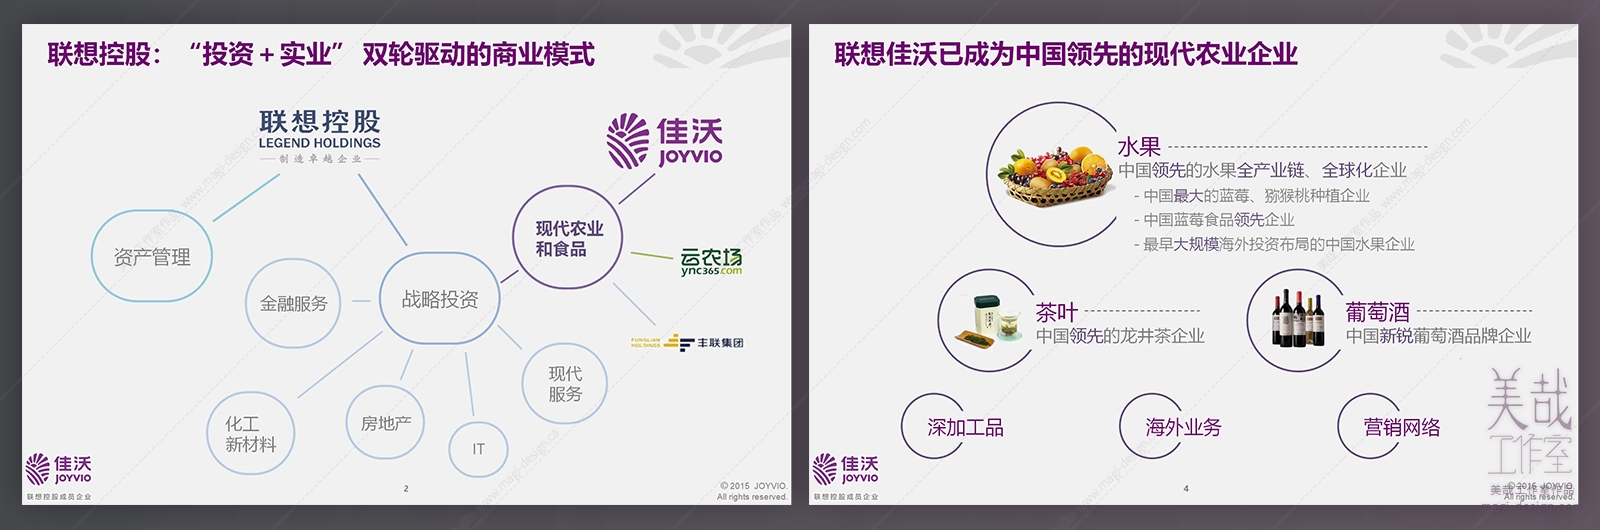 新型农业发展主题PPT幻灯片设计-页面展示：版面和示意图设计